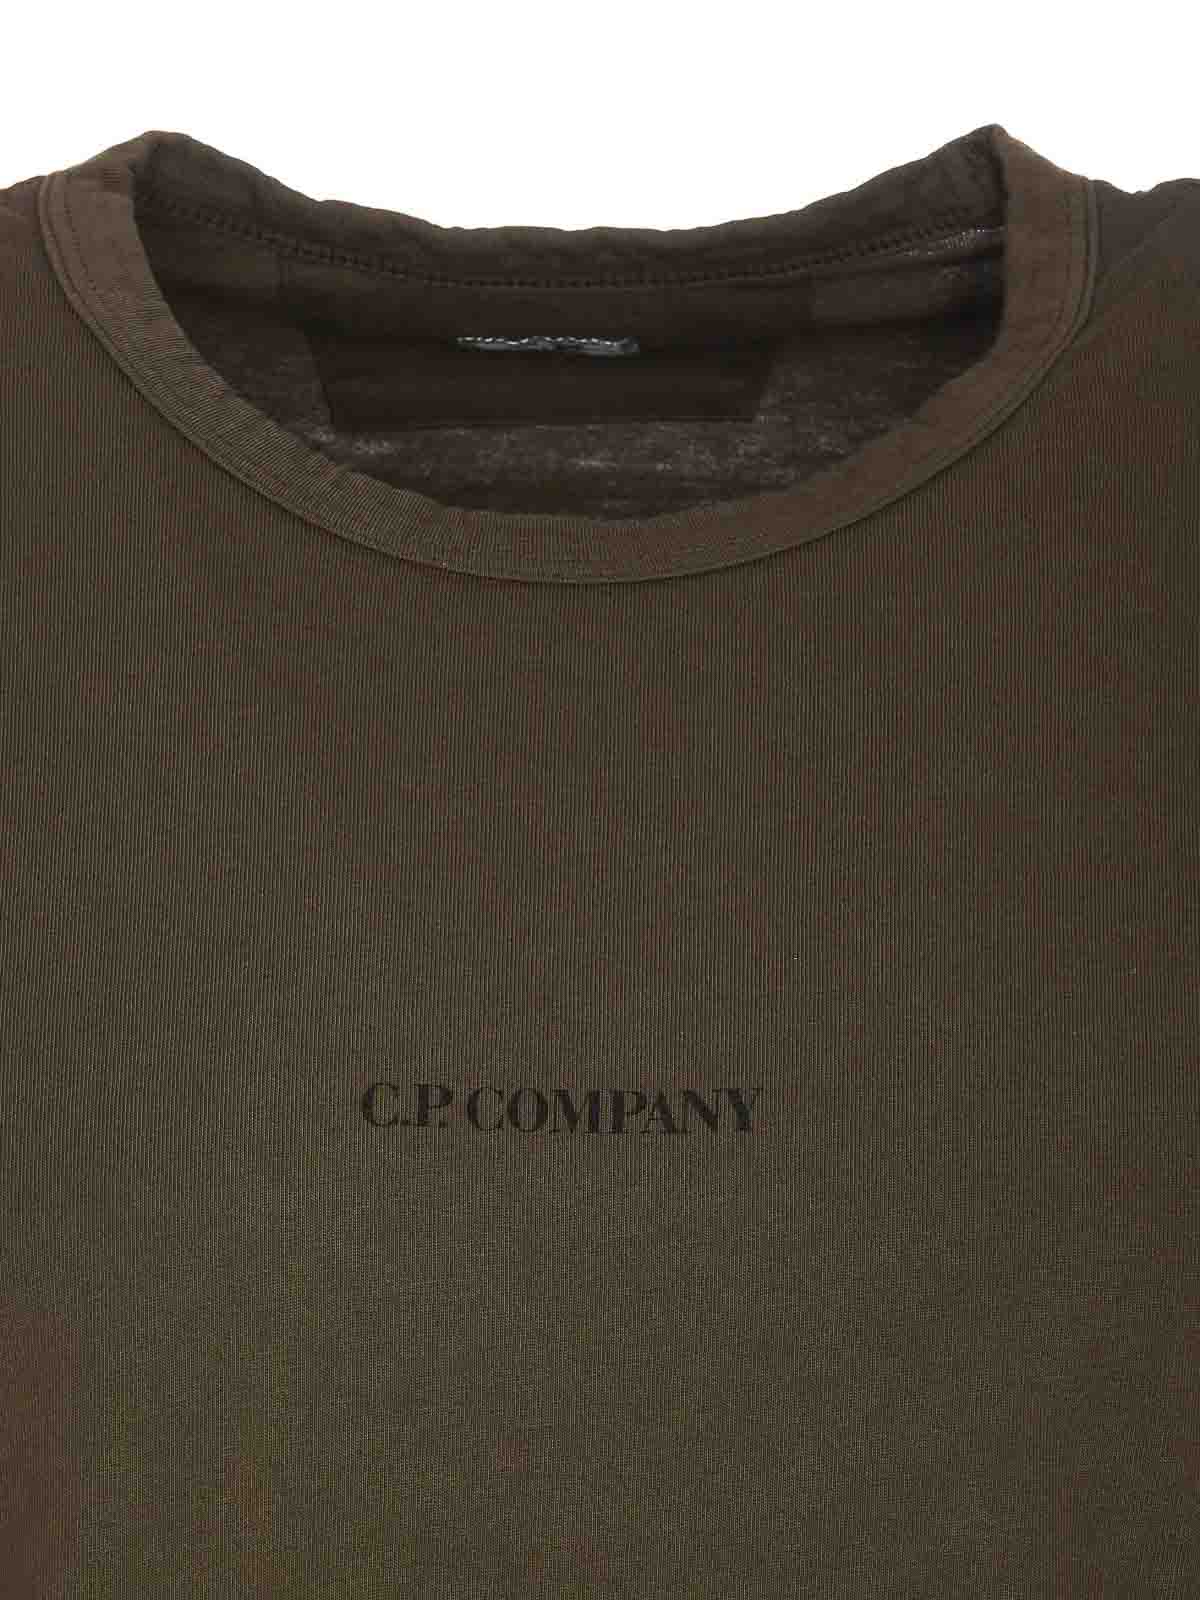 Shop C.p. Company Ivy Green T-shirt Crewneck Frontal Print